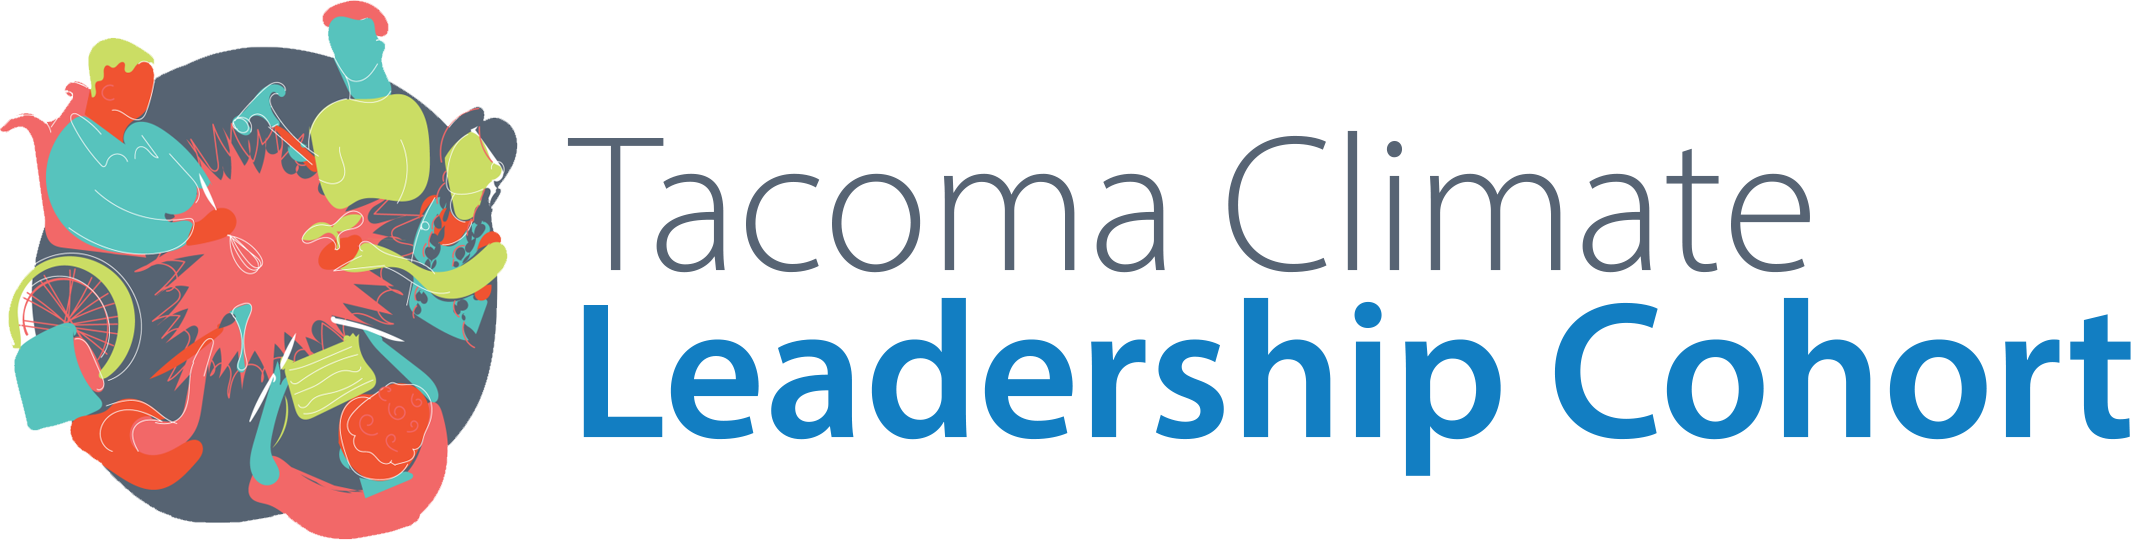 Tacoma Climate Leadership Cohort